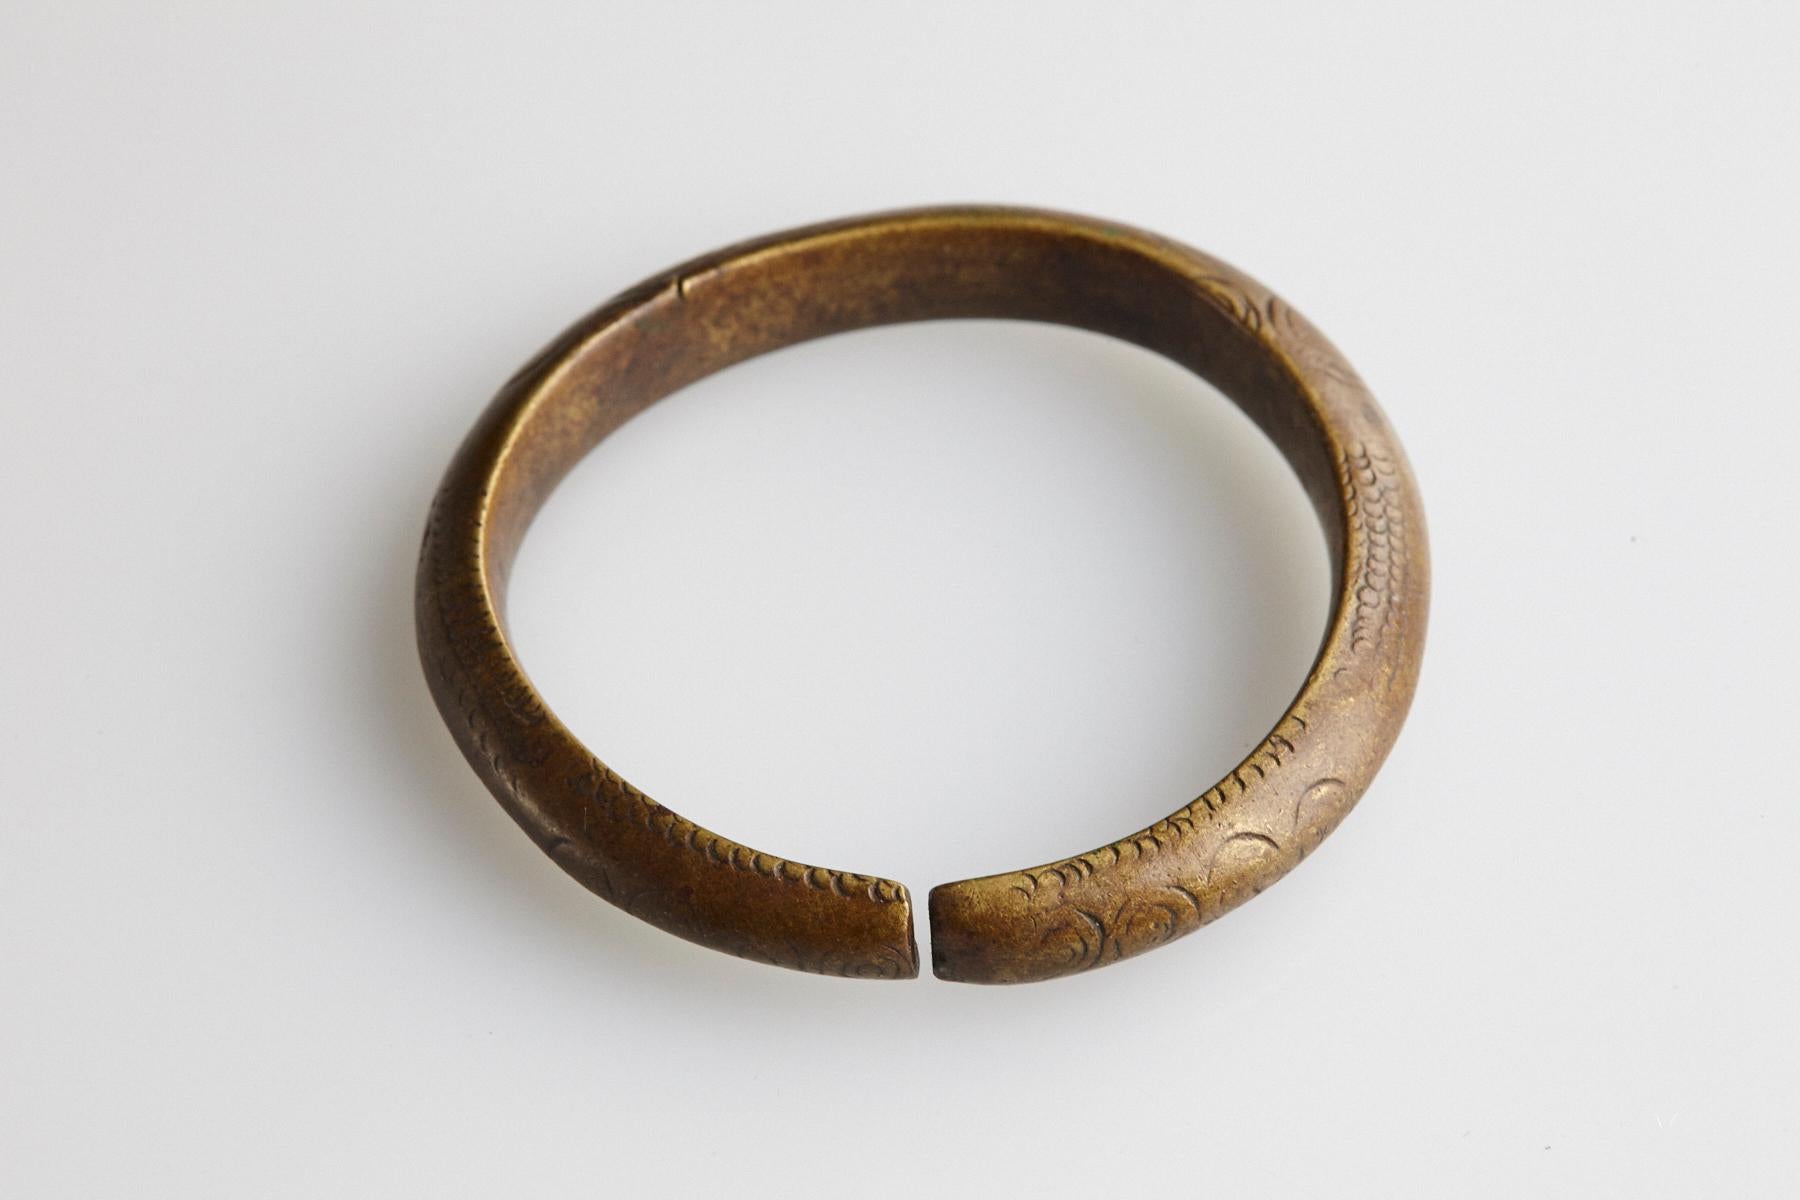 Bracelet monétaire en bronze du 19e siècle / Manille avec une ouverture fixe. Travail de conception minimaliste et simple avec des cercles et des lignes géométriques gravés.
Ce type de bracelet était utilisé et porté par le peuple Oromo, qui vit